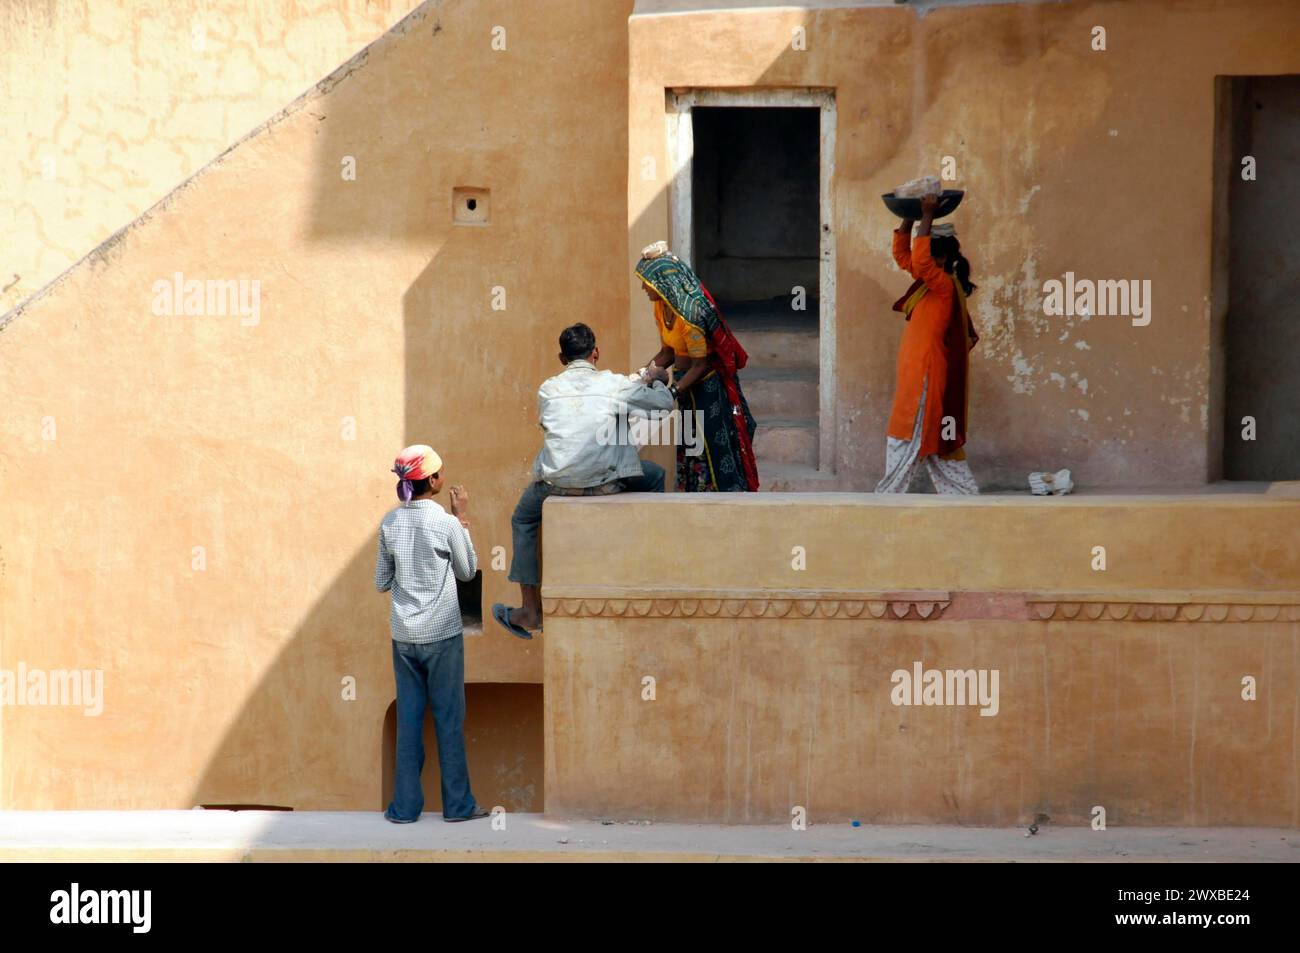 Menschen, die auf einer Baustelle arbeiten, Lasten transportieren und interagieren, Jaipur, Rajasthan, Nordindien, Indien Stockfoto